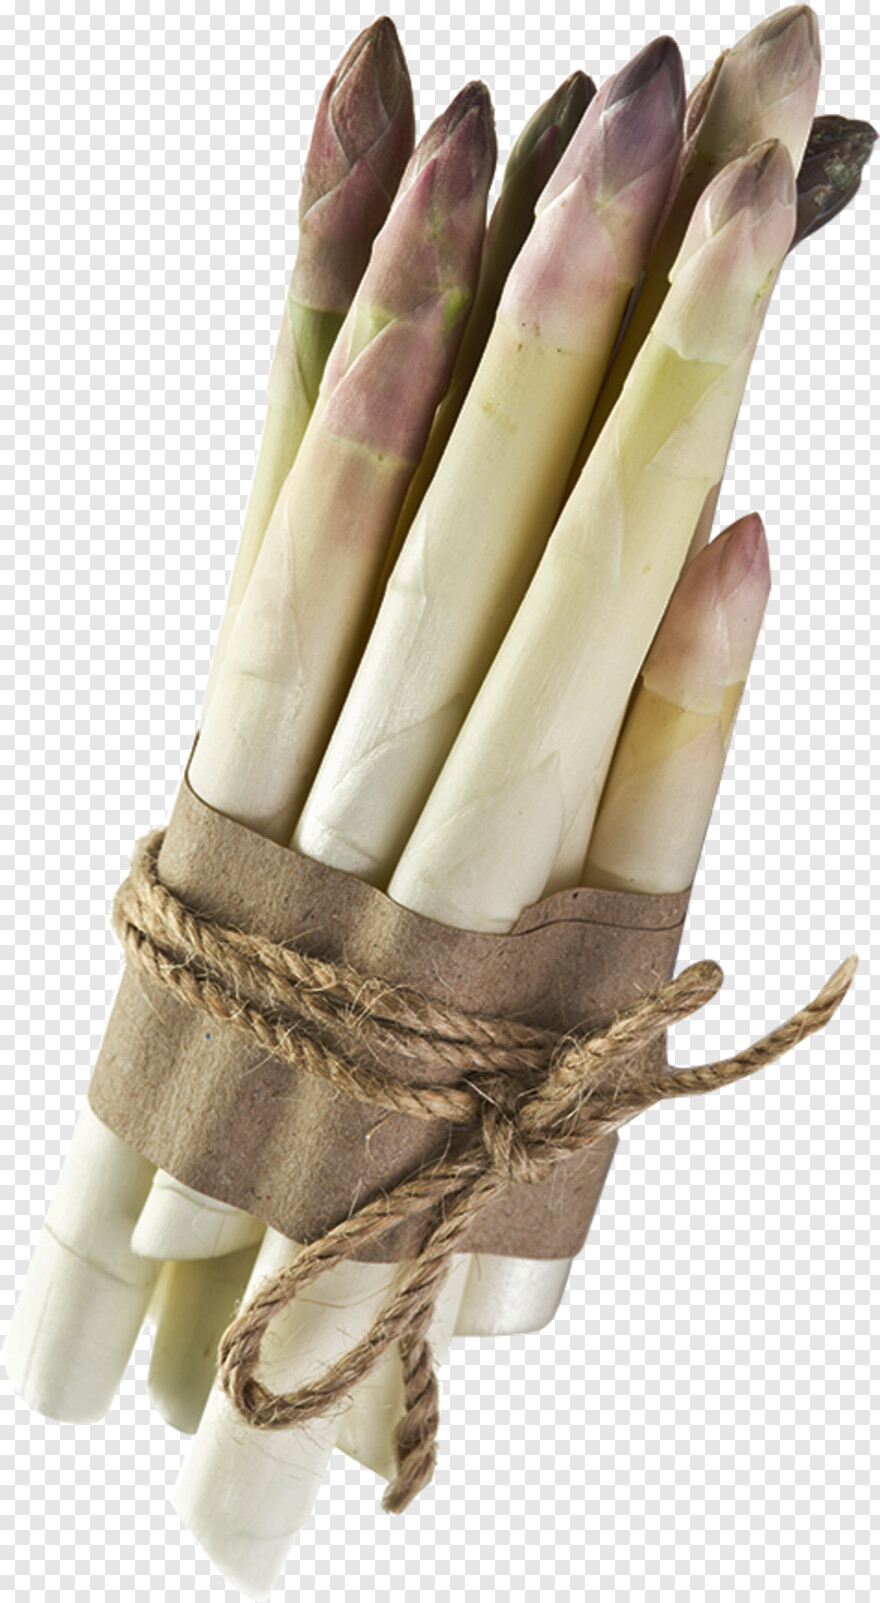 asparagus # 468459